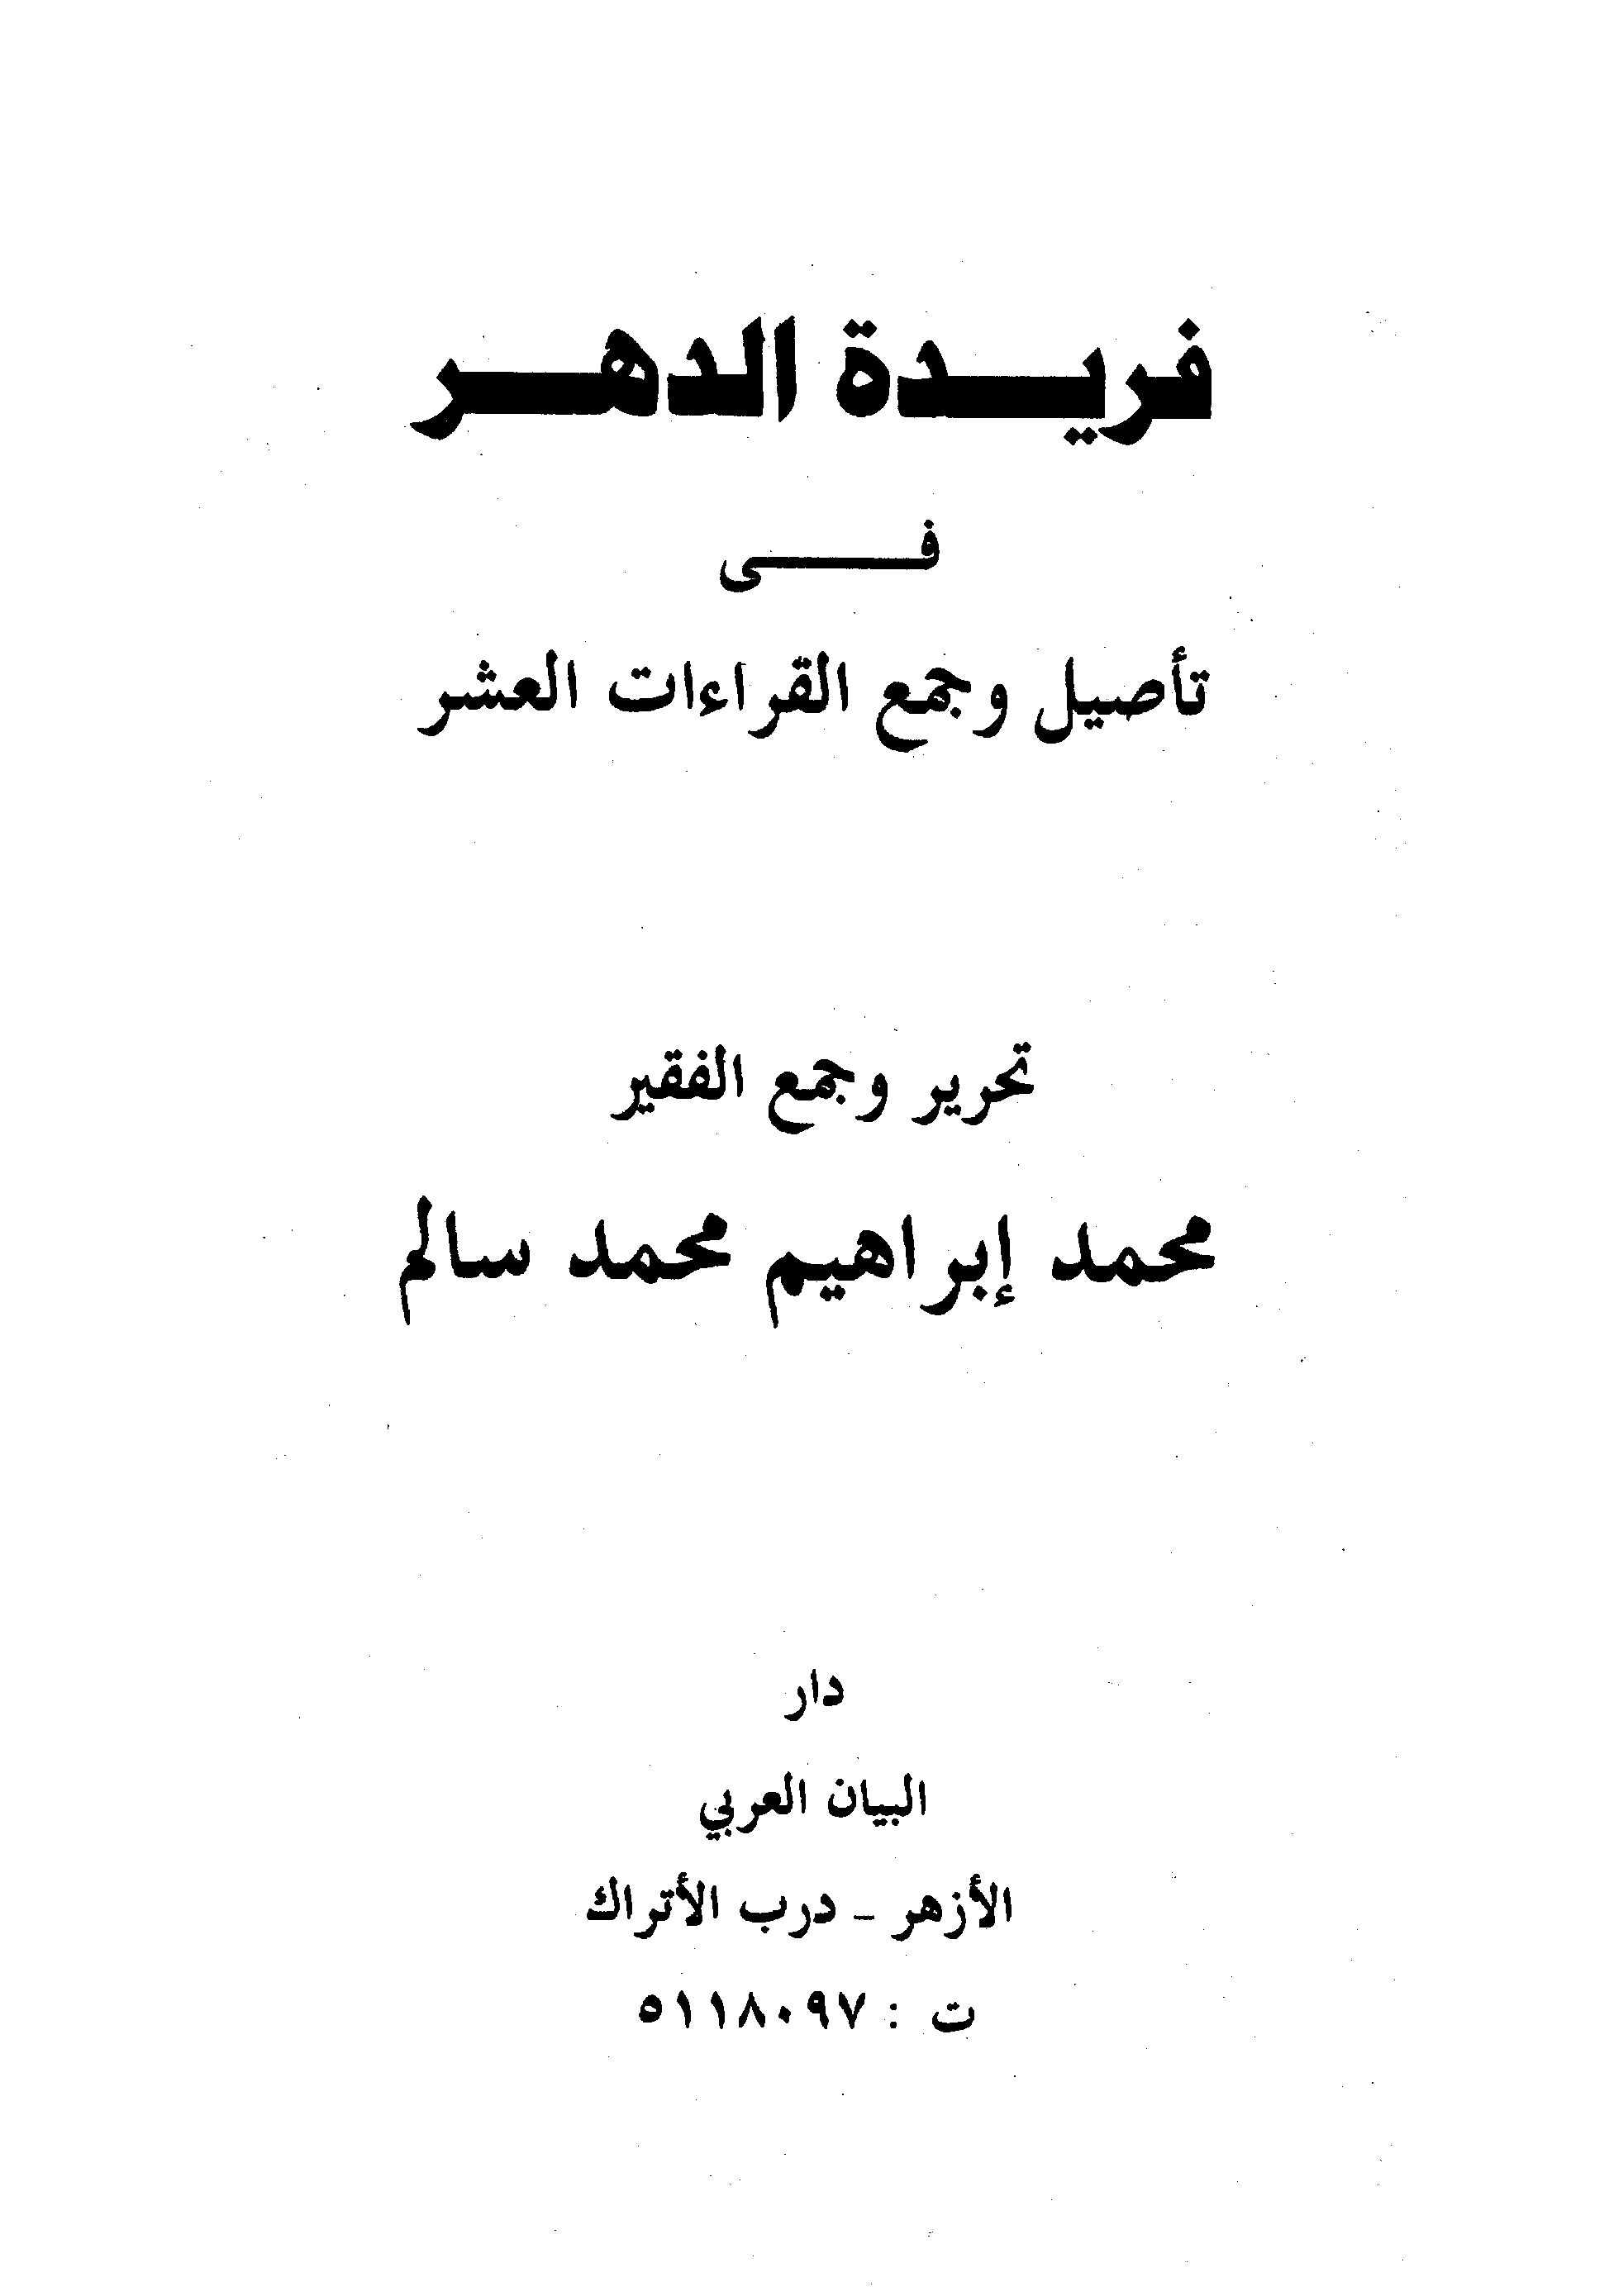 تحميل كتاب فريدة الدهر في تأصيل وجمع القراءات العشر للمؤلف: الشيخ محمد إبراهيم محمد سالم الحنفي (ت 1430)